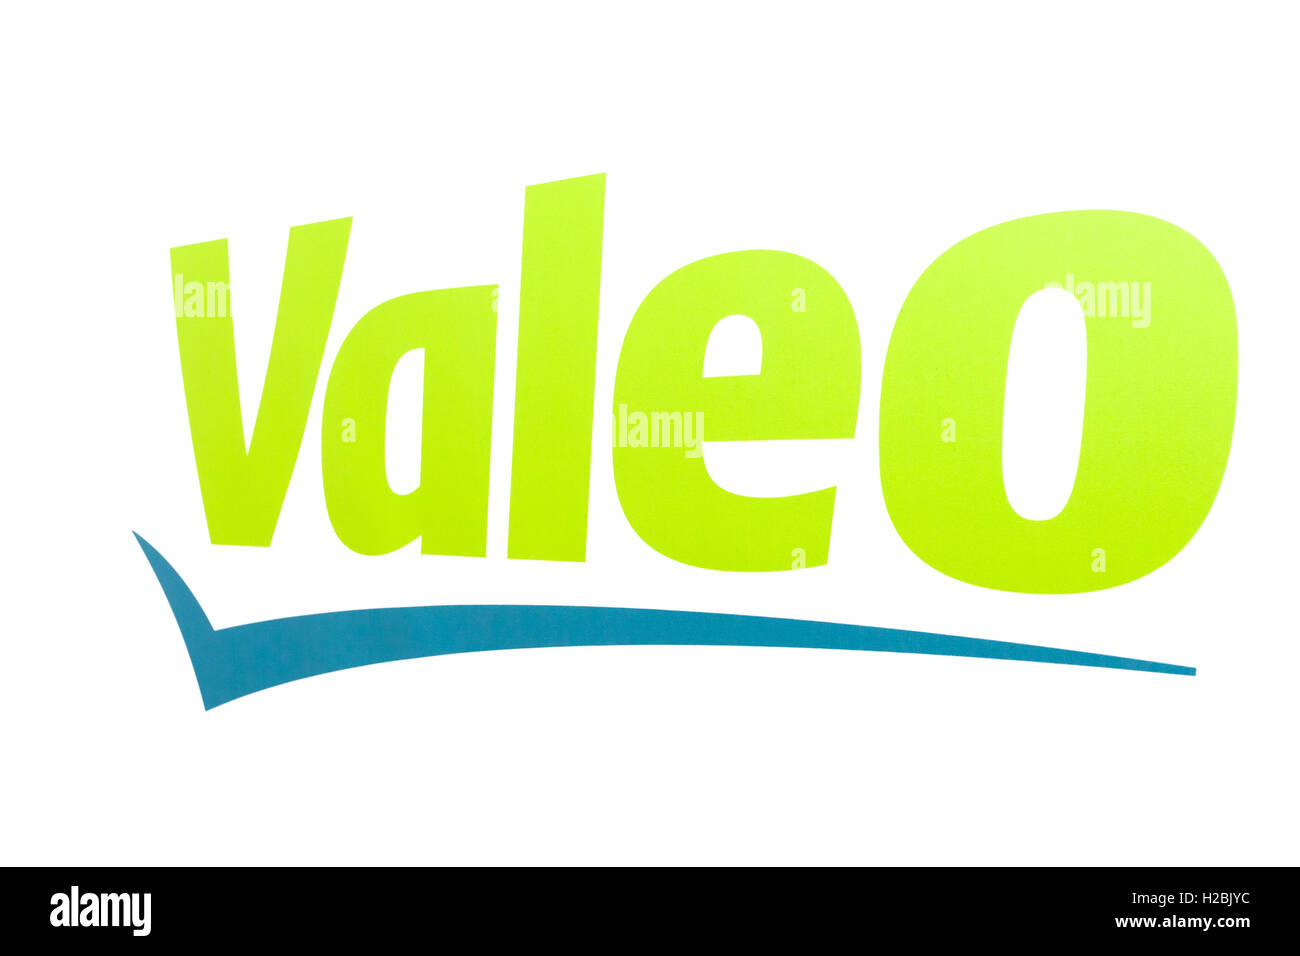 Logo of the french automotive supplier company Valeo Stock Photo